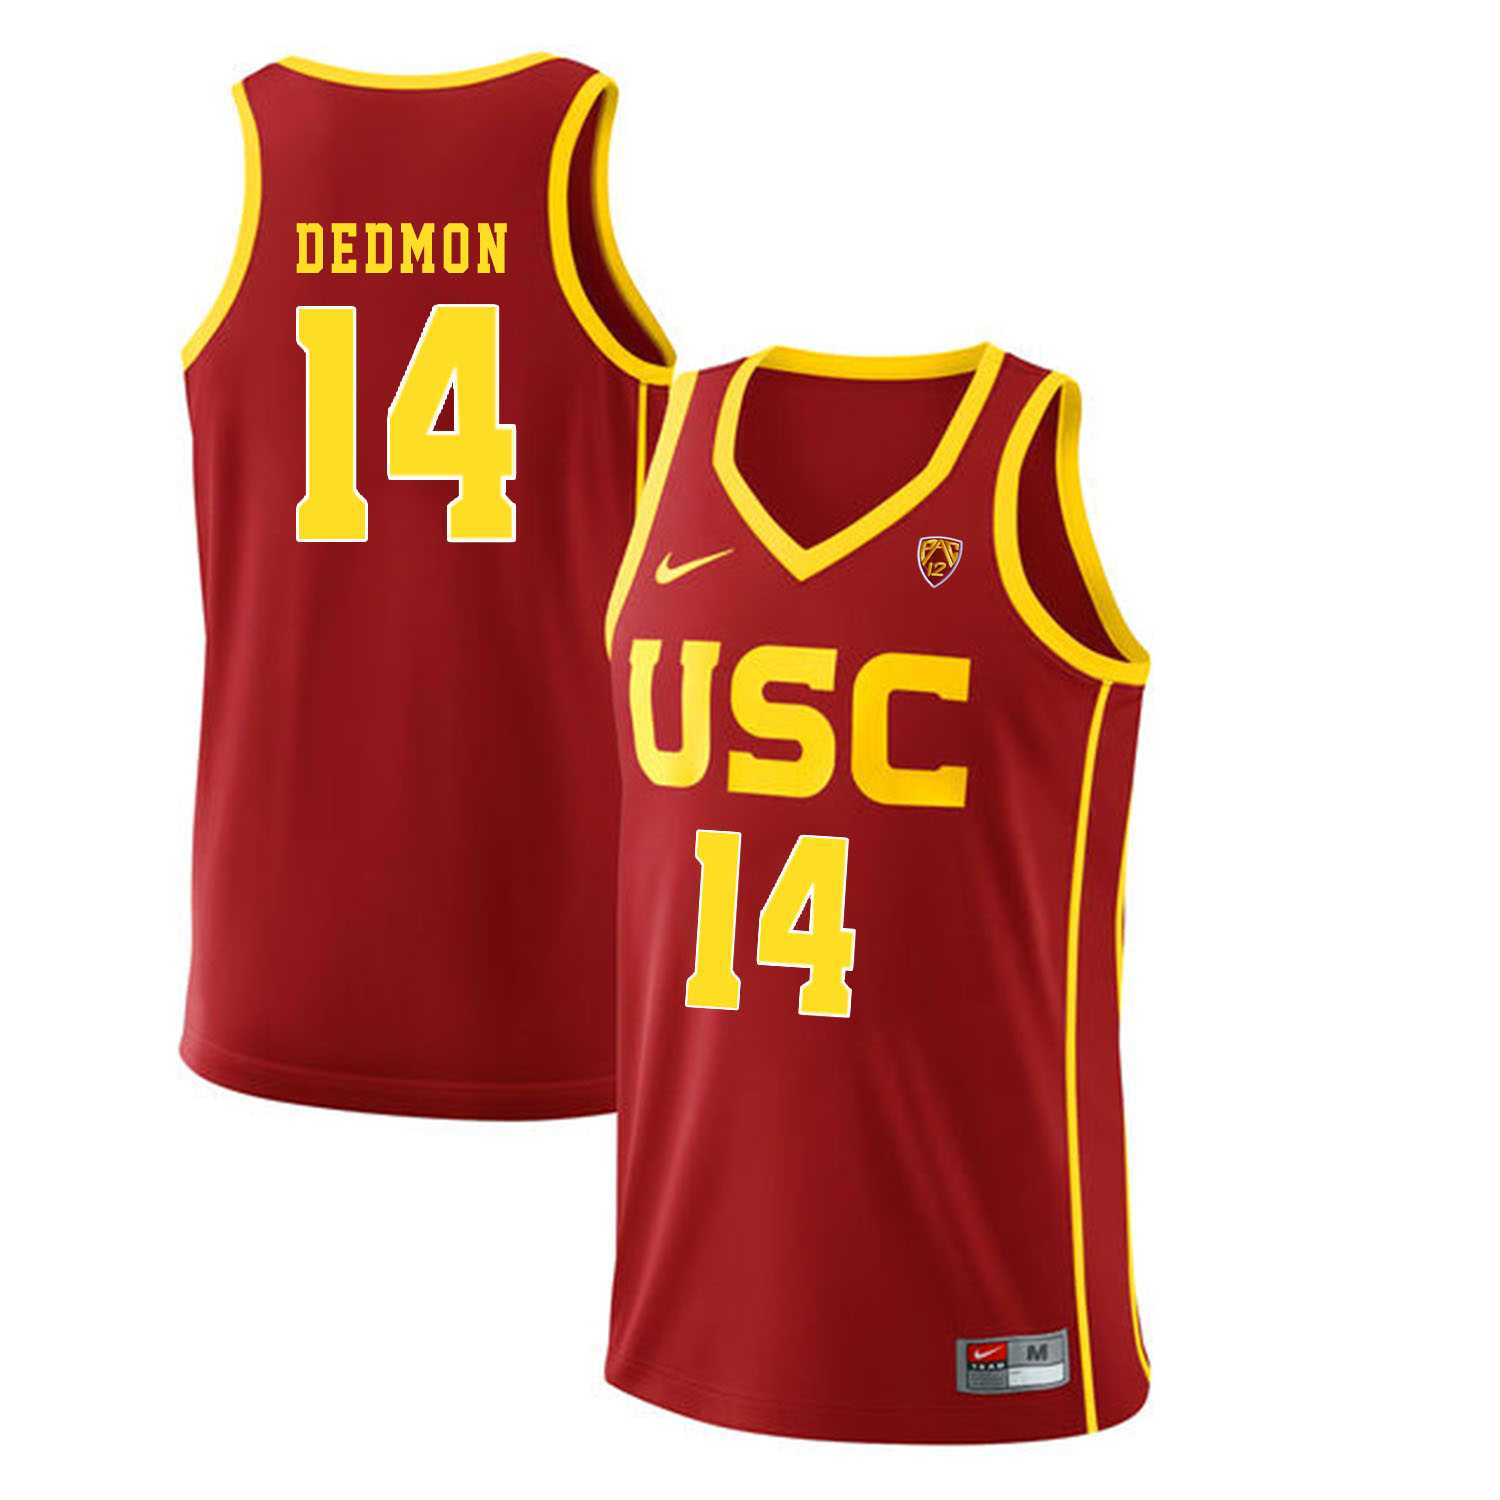 USC Trojans #14 Dewayne Dedmon Red College Basketball Jersey